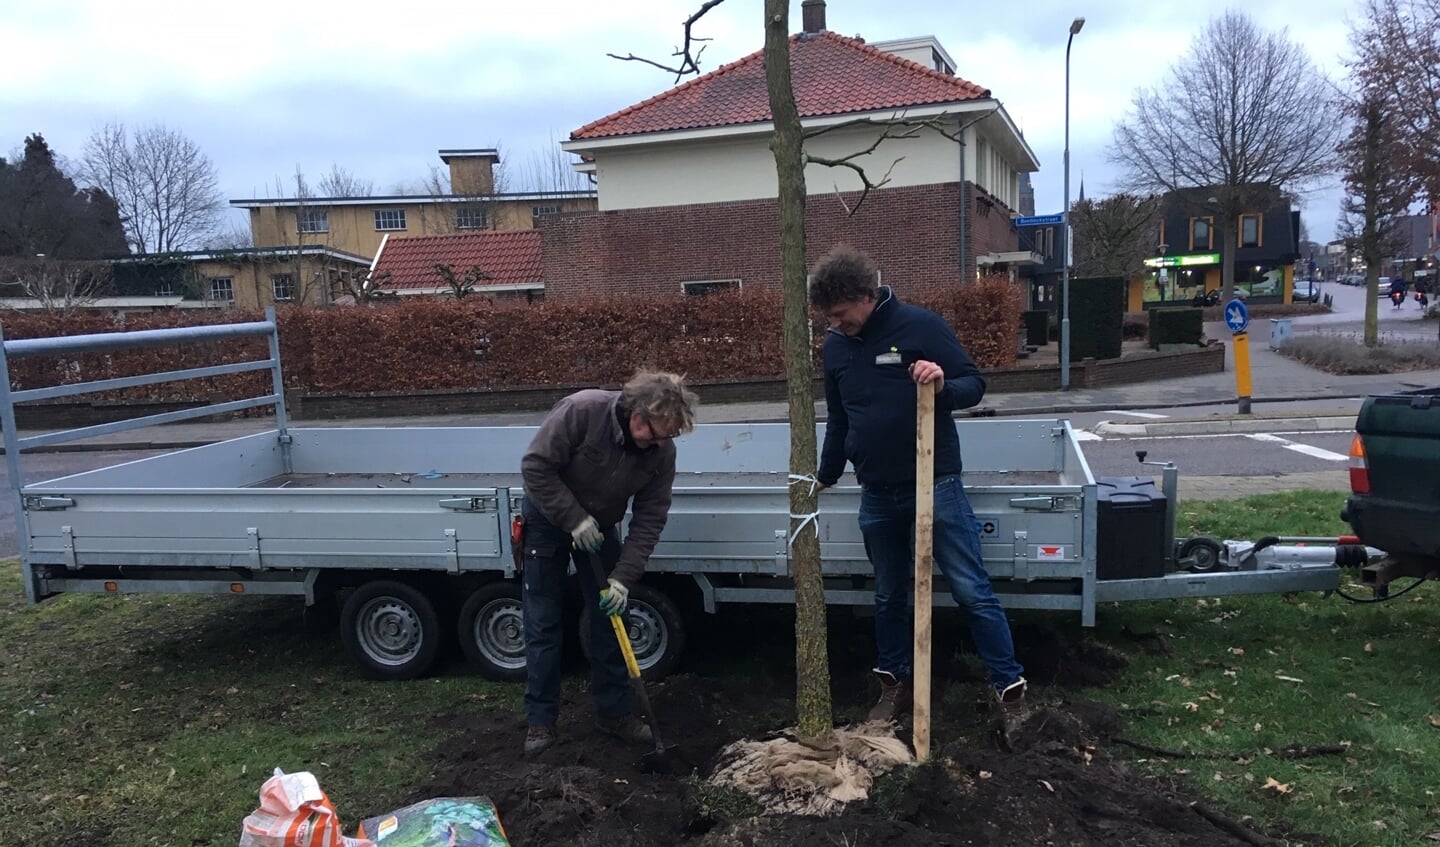 Hovenier Oswald te Dorsthorst en kweker Eltjo Rendering planten een boom op het remiseplantsoen aan de Varsseveldseweg. Foto: Barbara Pavinati